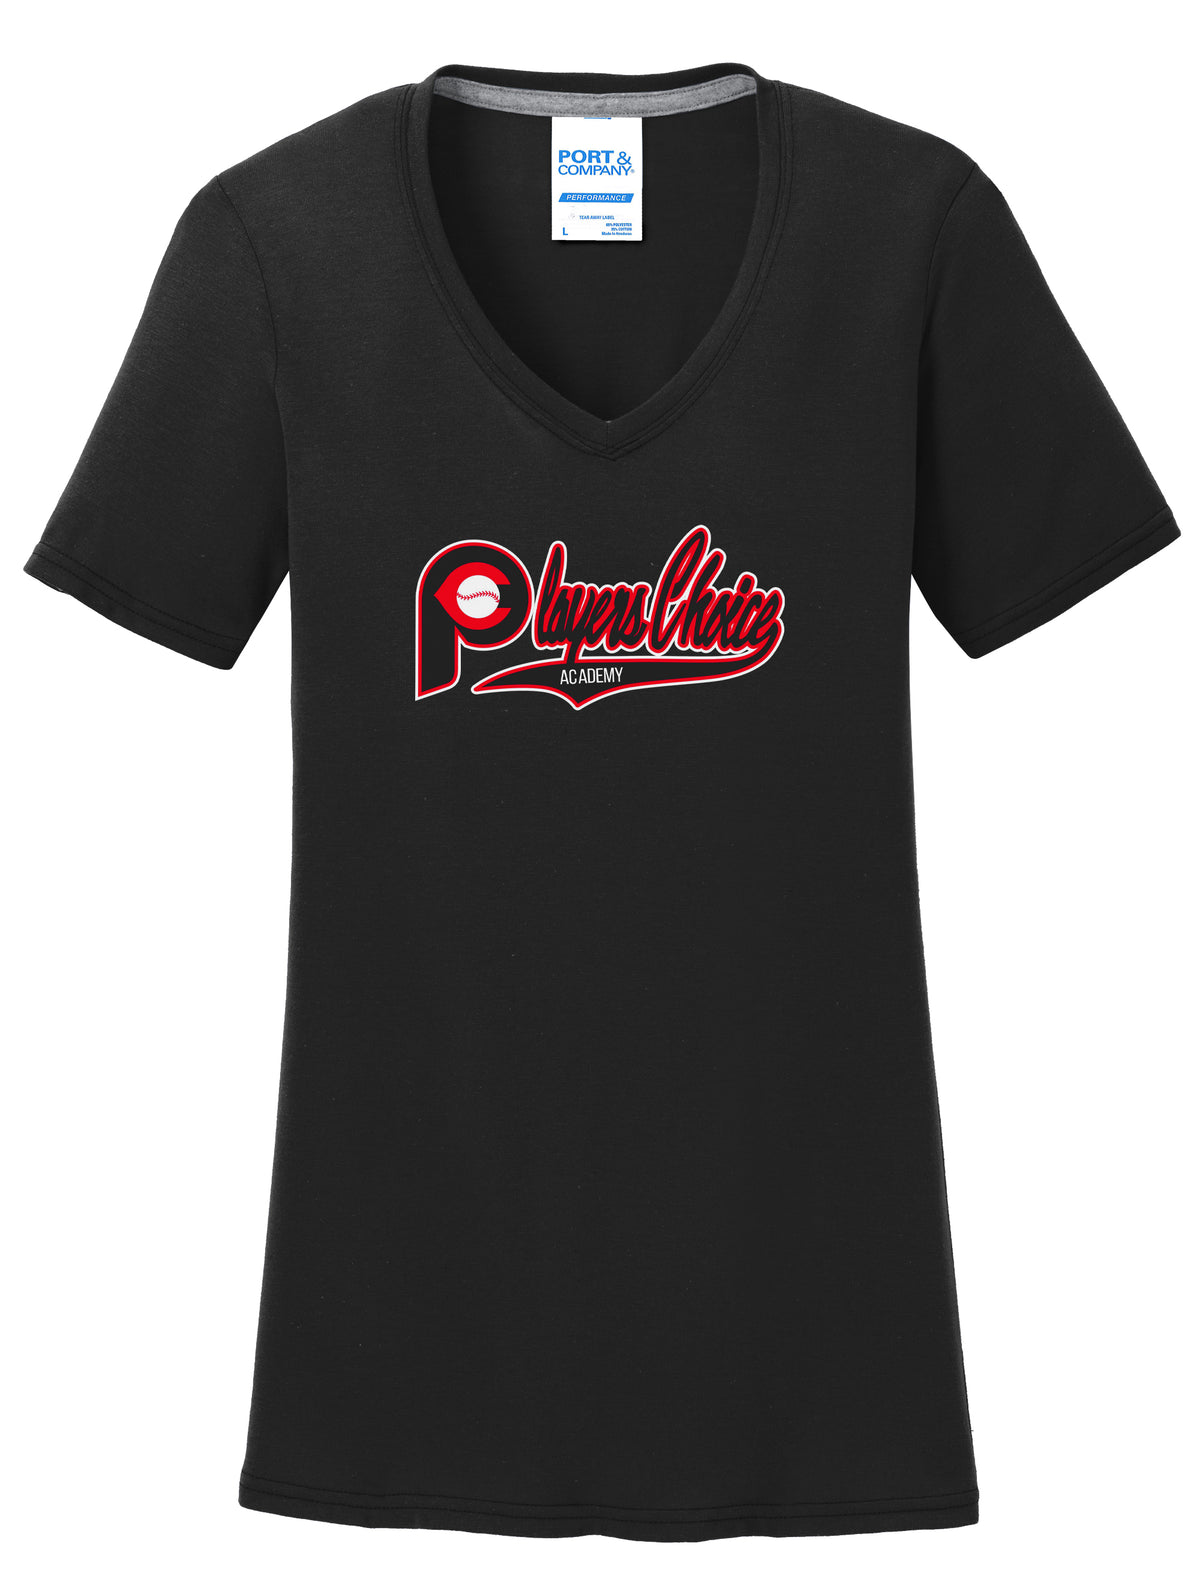 Player's Choice Academy Baseball Women's T-Shirt